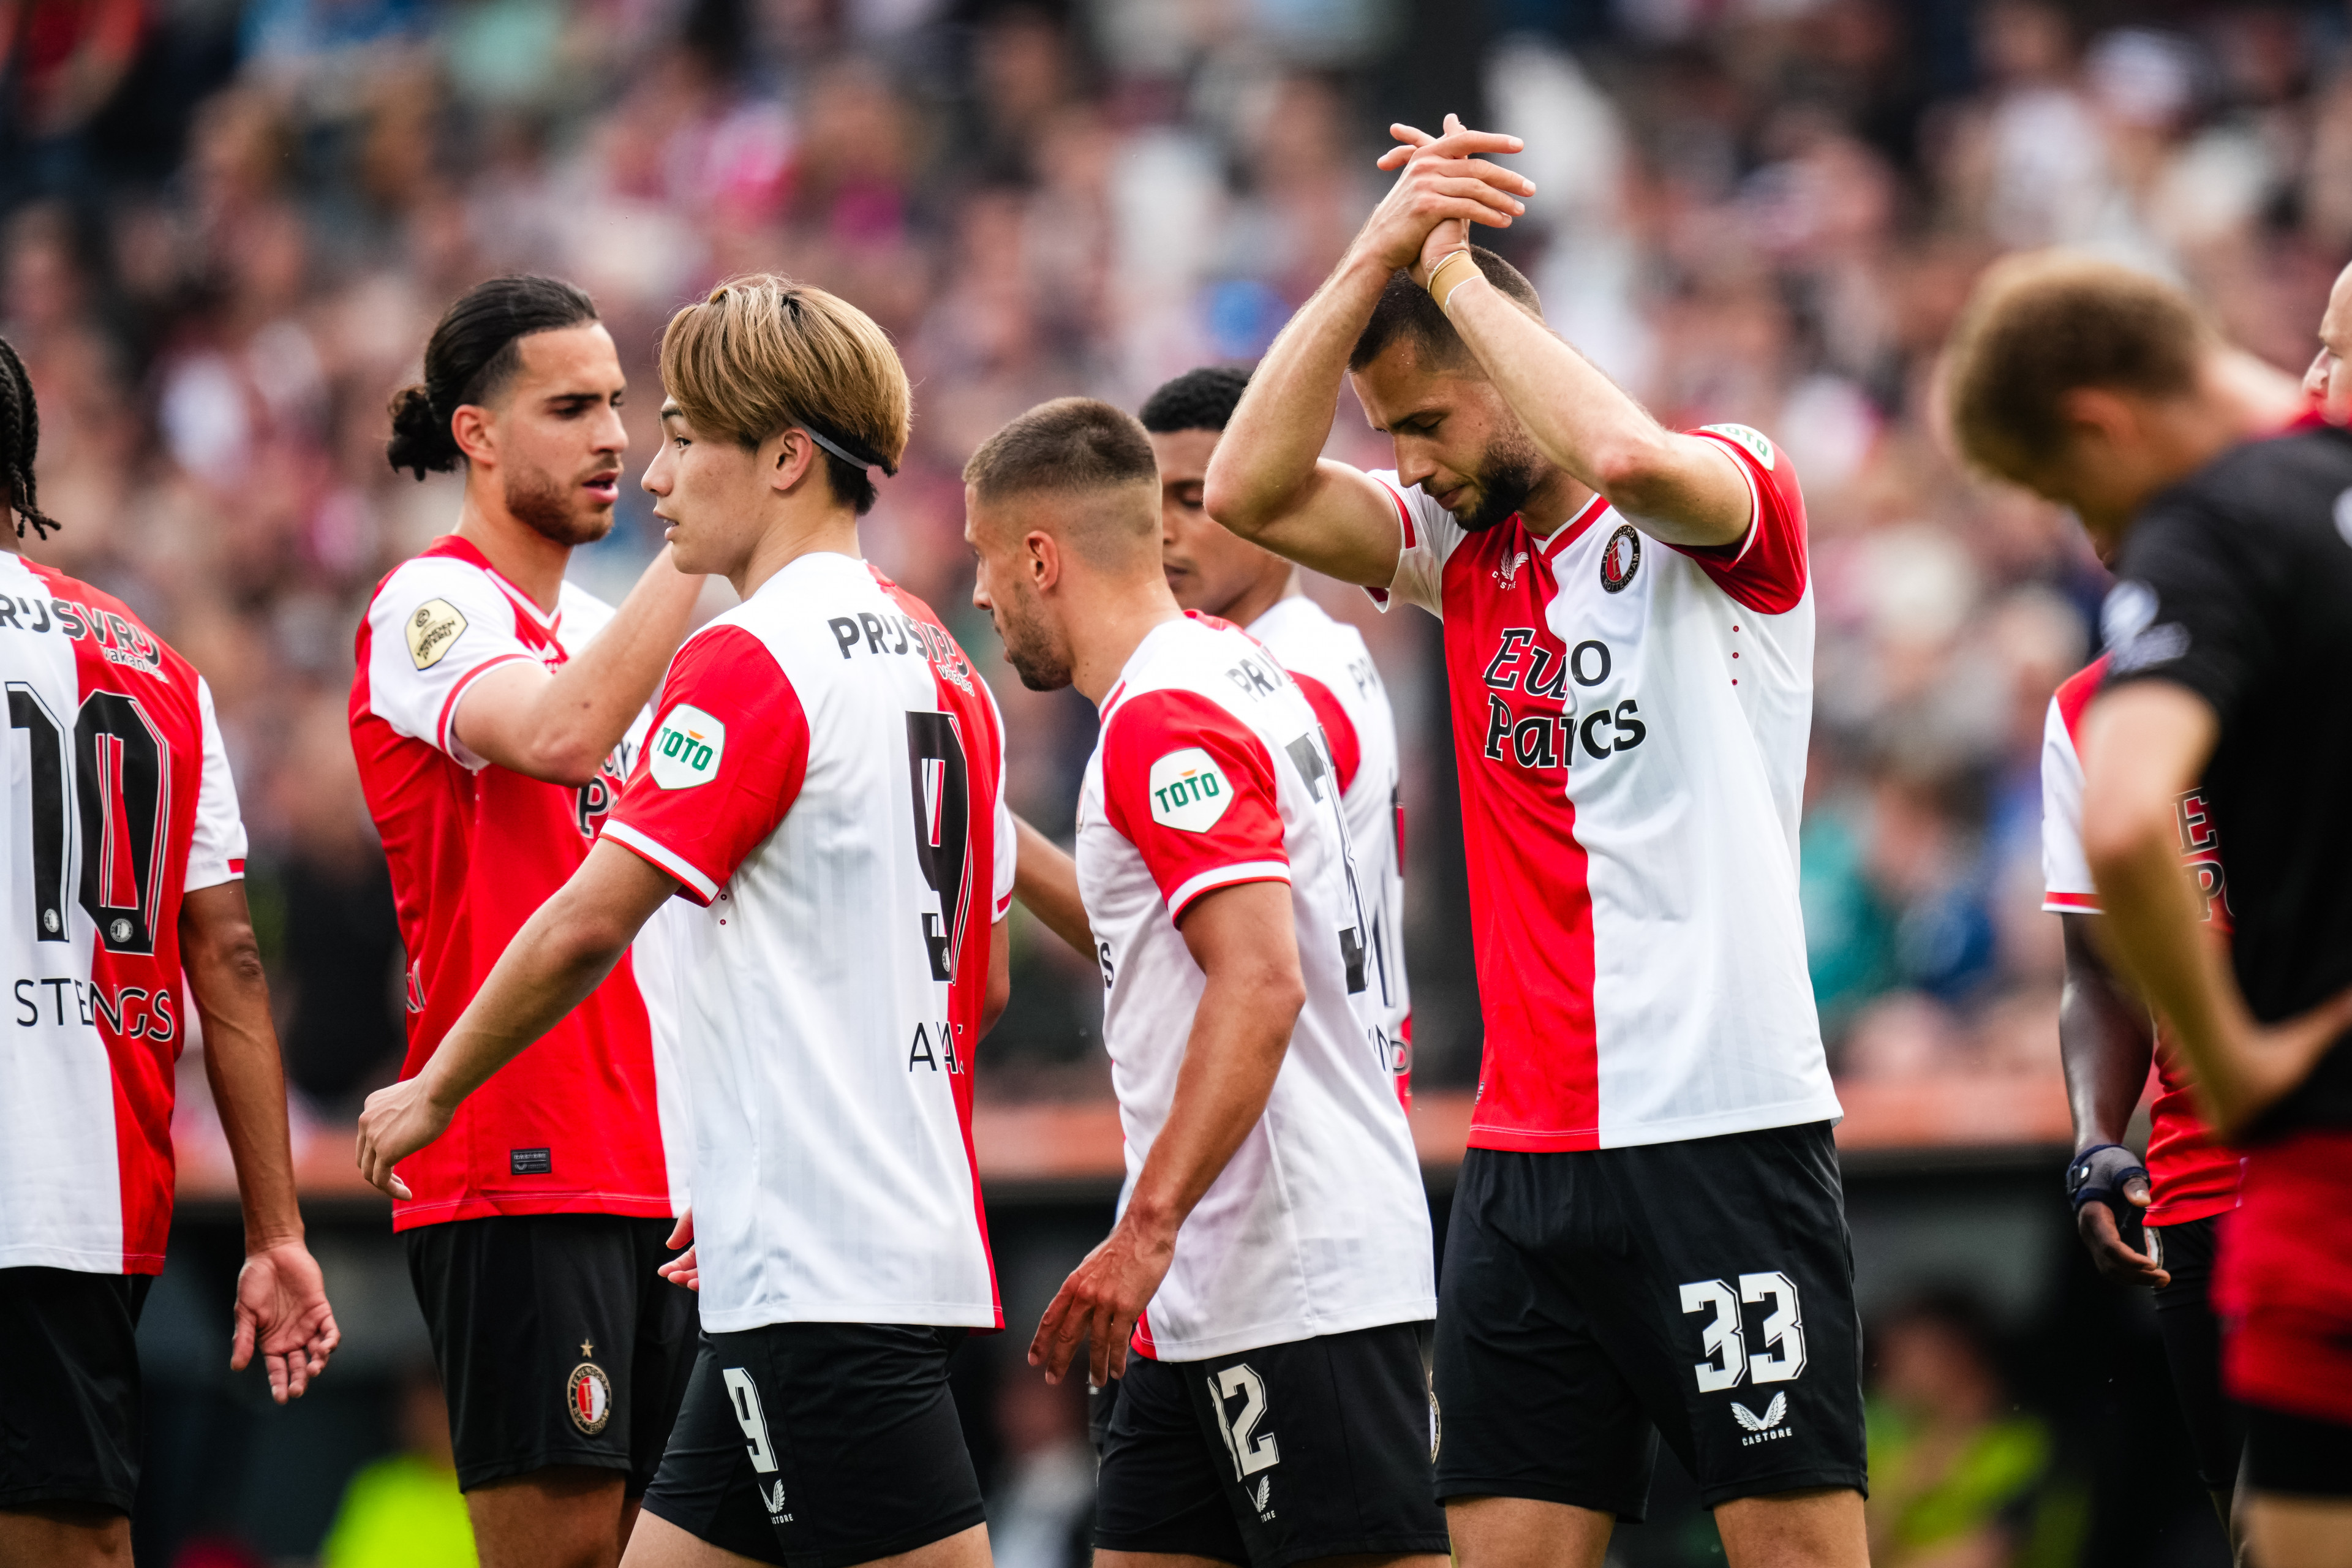 Beoordeel de spelers voor de wedstrijd Feyenoord - Excelsior (4-0)